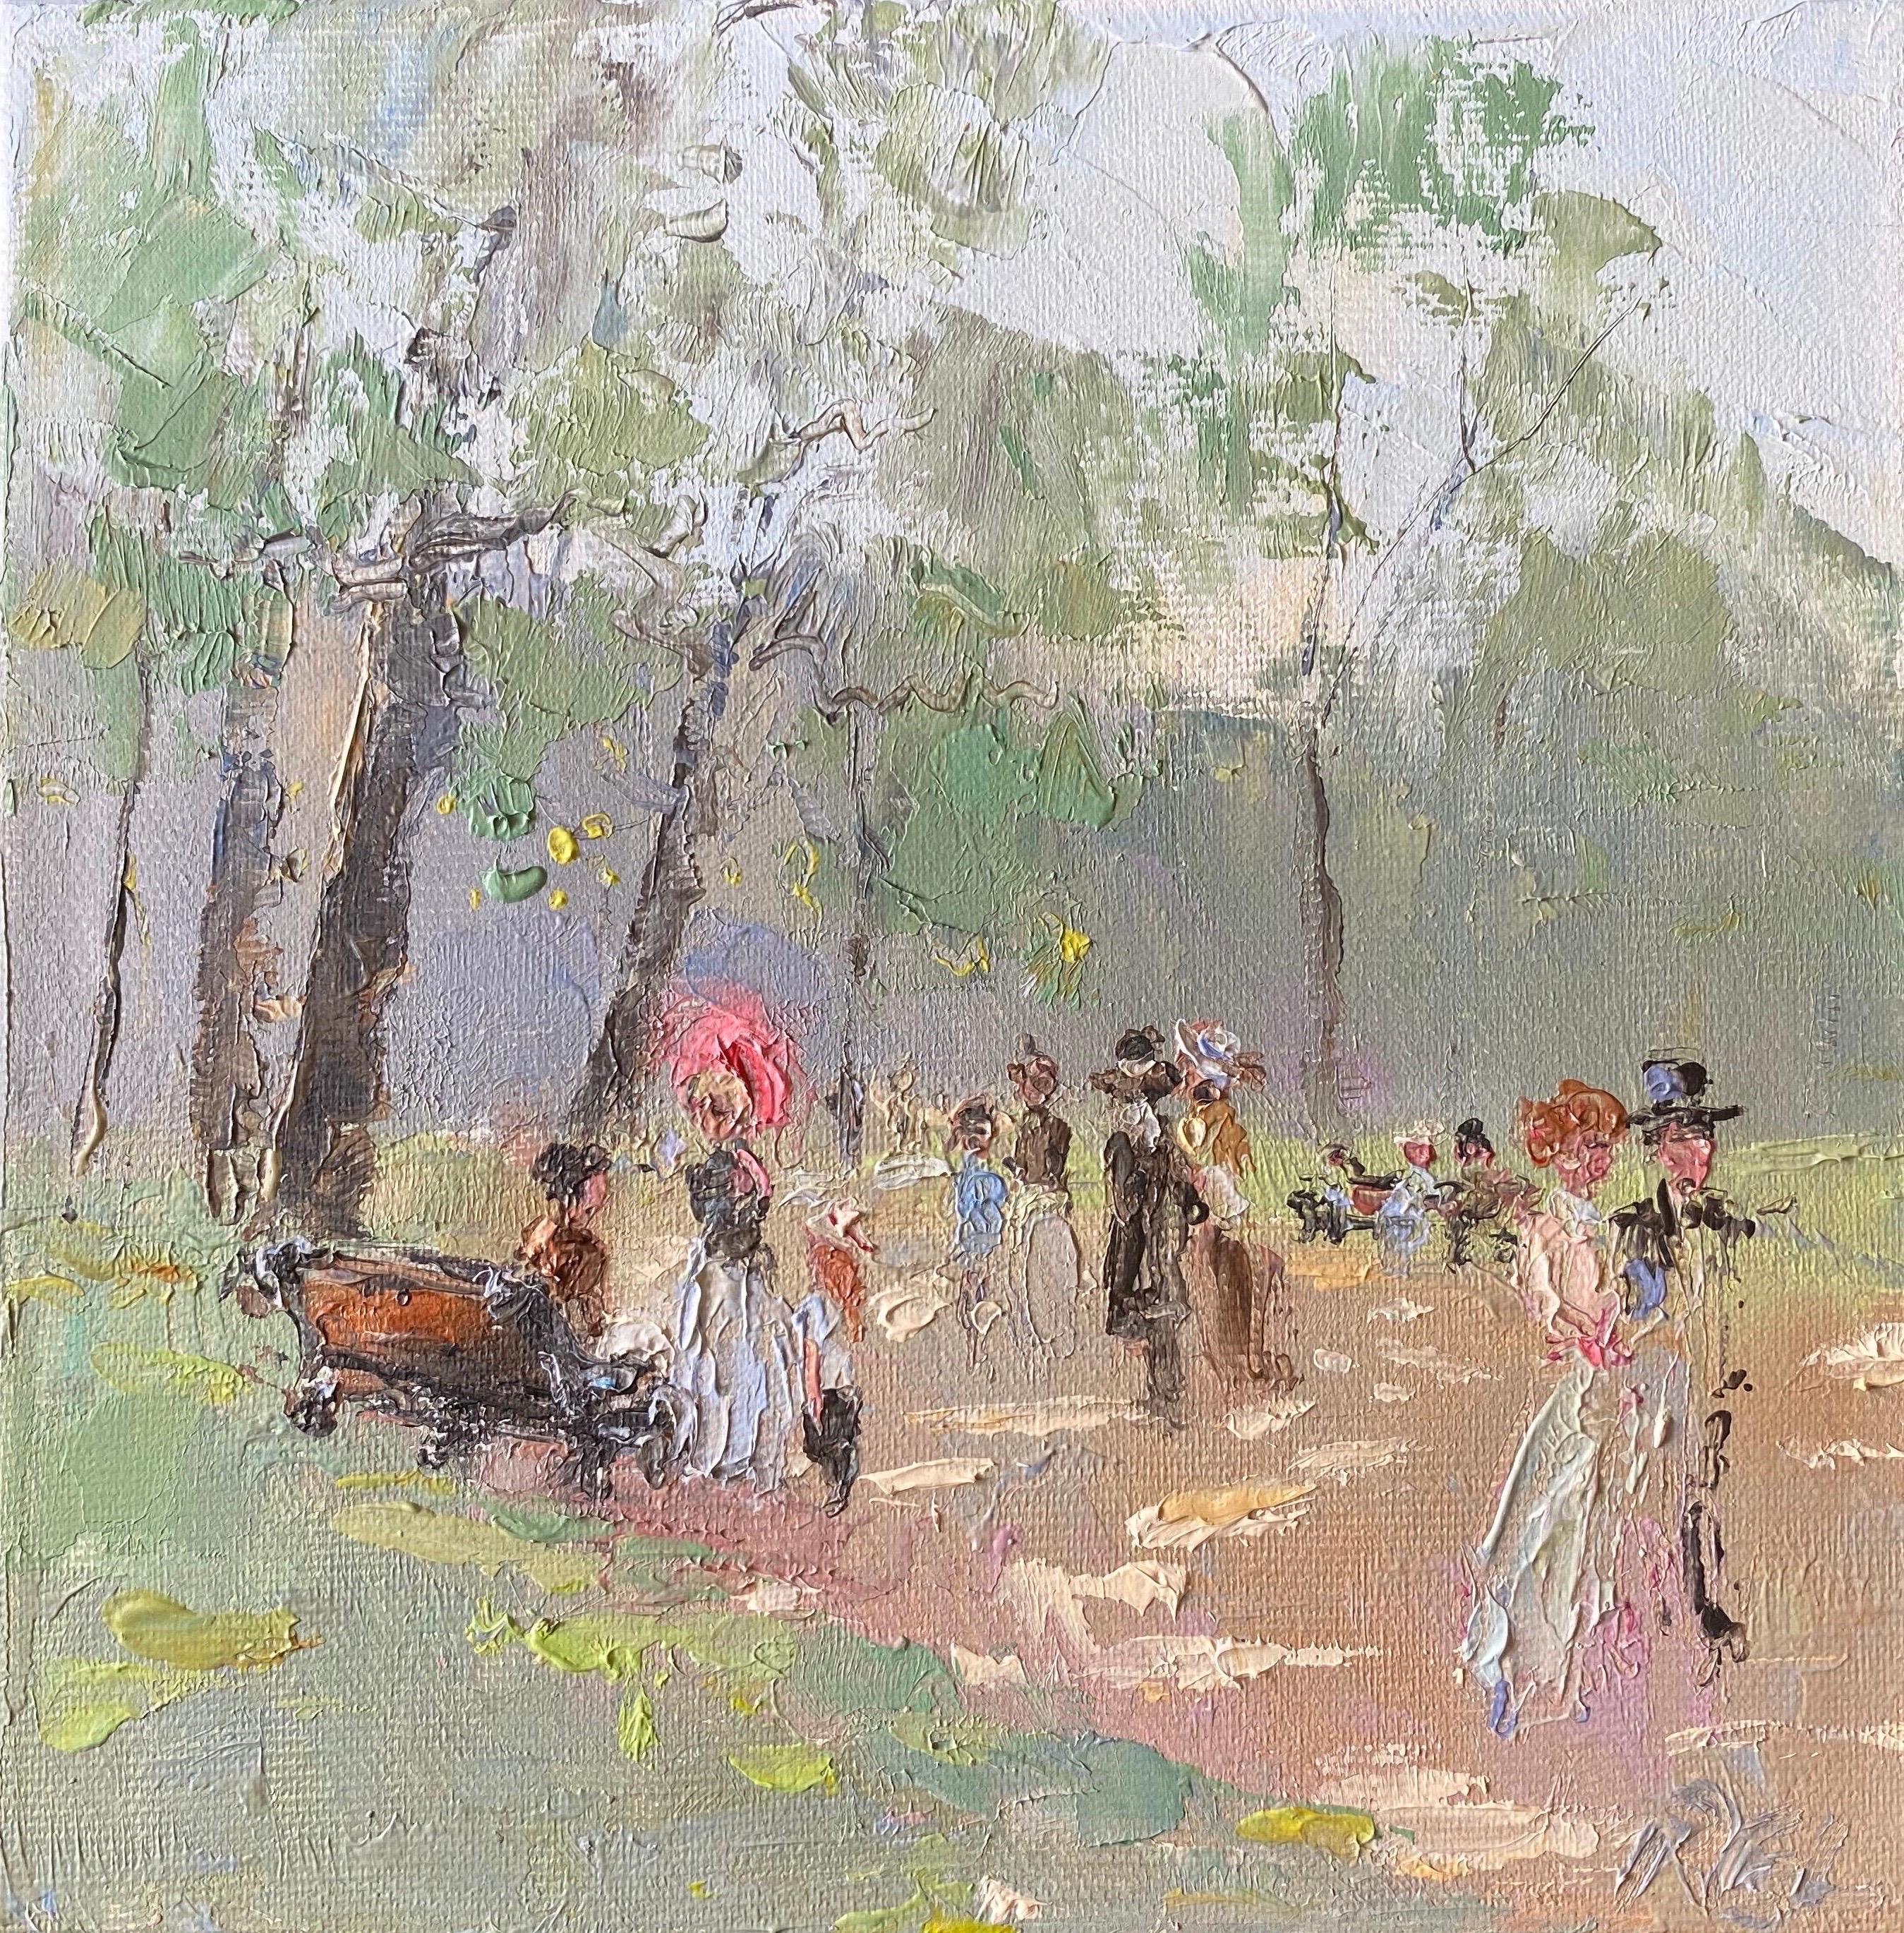 Landscape Painting English Impressionist - Figures élégantes marchant dans un parc parisien, de douces nuances de couleurs vertes